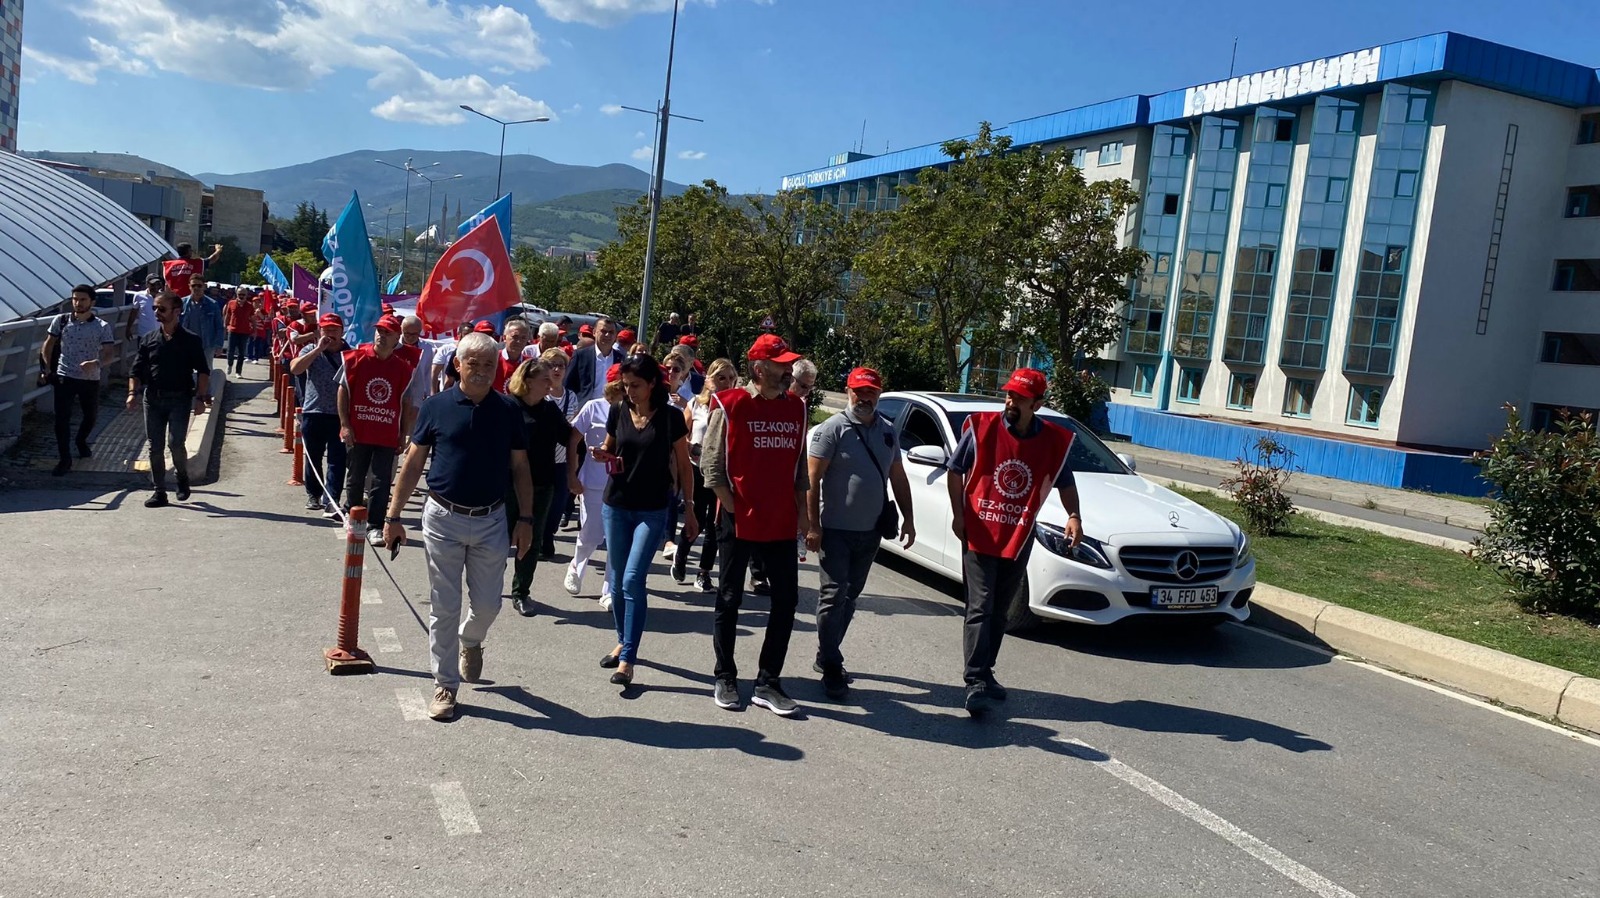 Samsun'da TEZ-KOOP işçileri, OMÜ'deki 6'ncı eylemlerini gerçekleştirirken Sendika Başkanı, "Yüzde 5 lanetinden kurtulana kadar burada olacağız" dedi